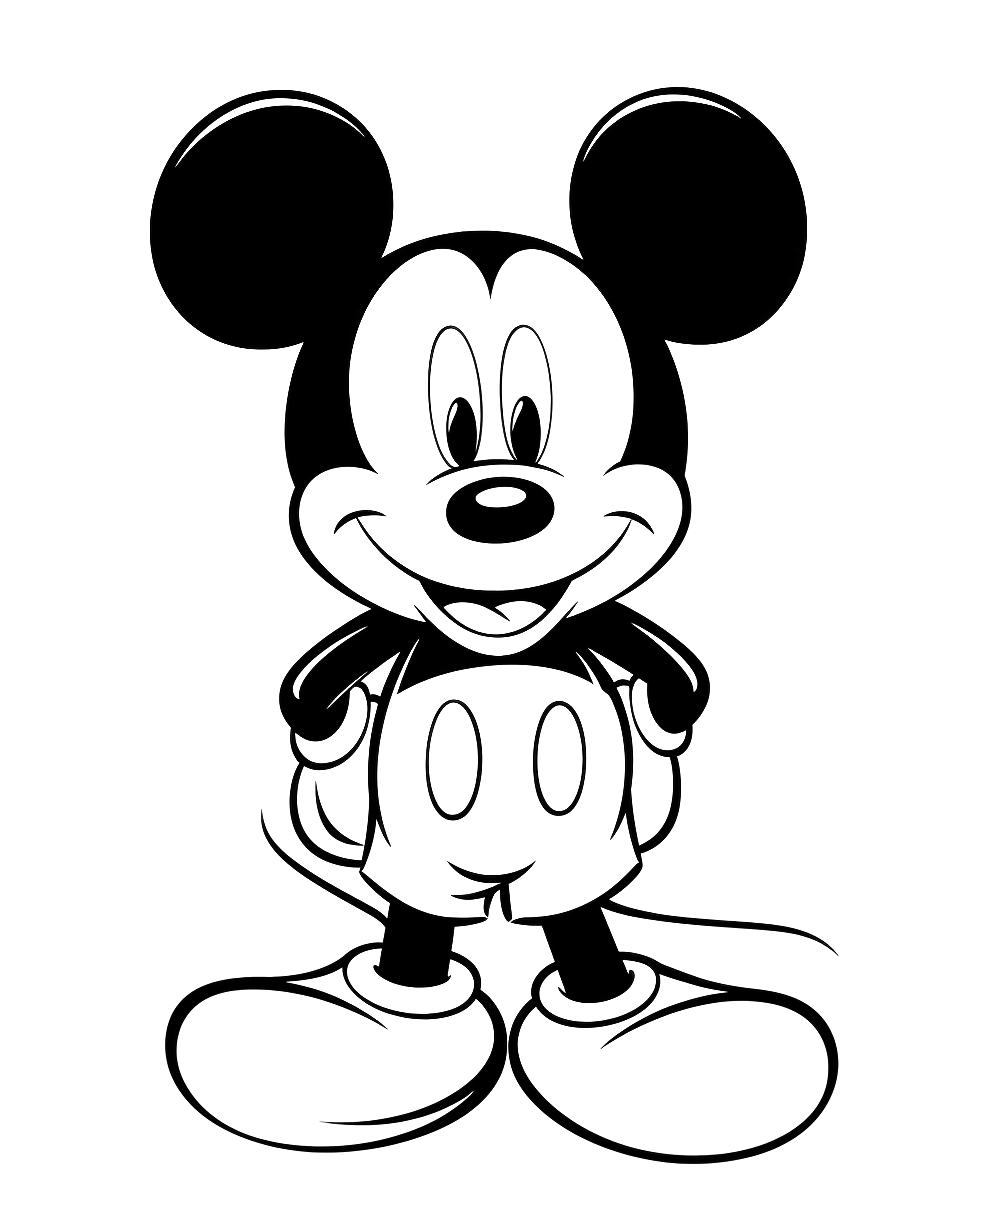 Mickey Mouse - Malvorlagen für Kinder